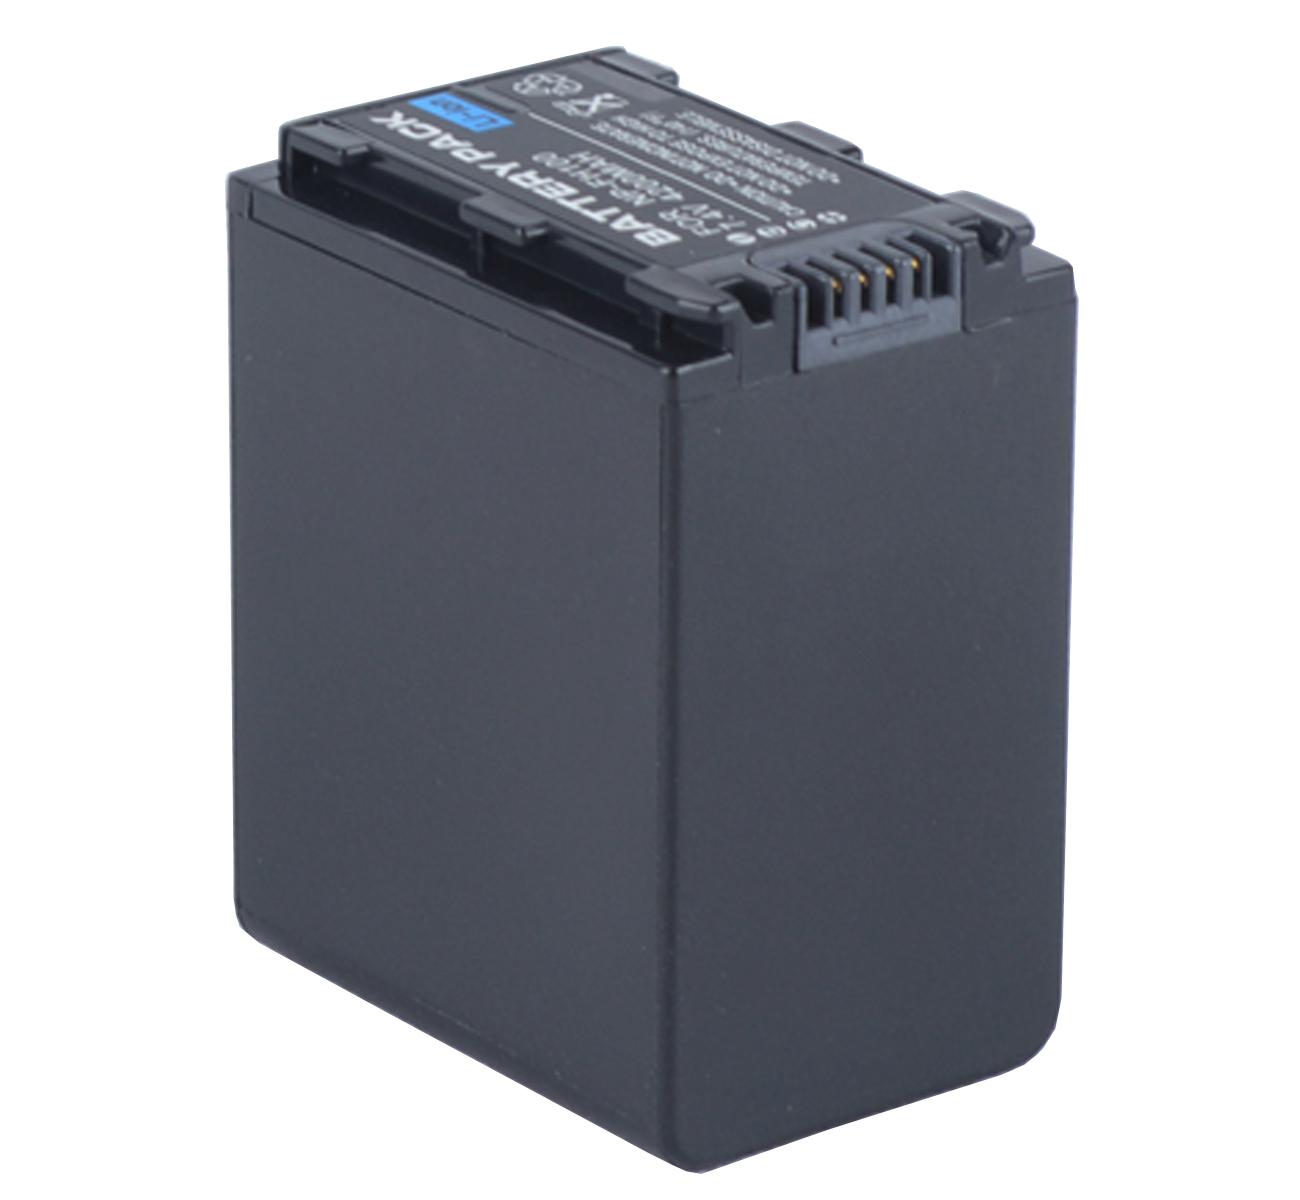 Изображение товара: Батарейный блок для видеокамеры sony DCR-SR52E, DCR-SR55E, DCR-SR57E, DCR-SR62E, DCR-SR65E, DCR-SR67E Handycam